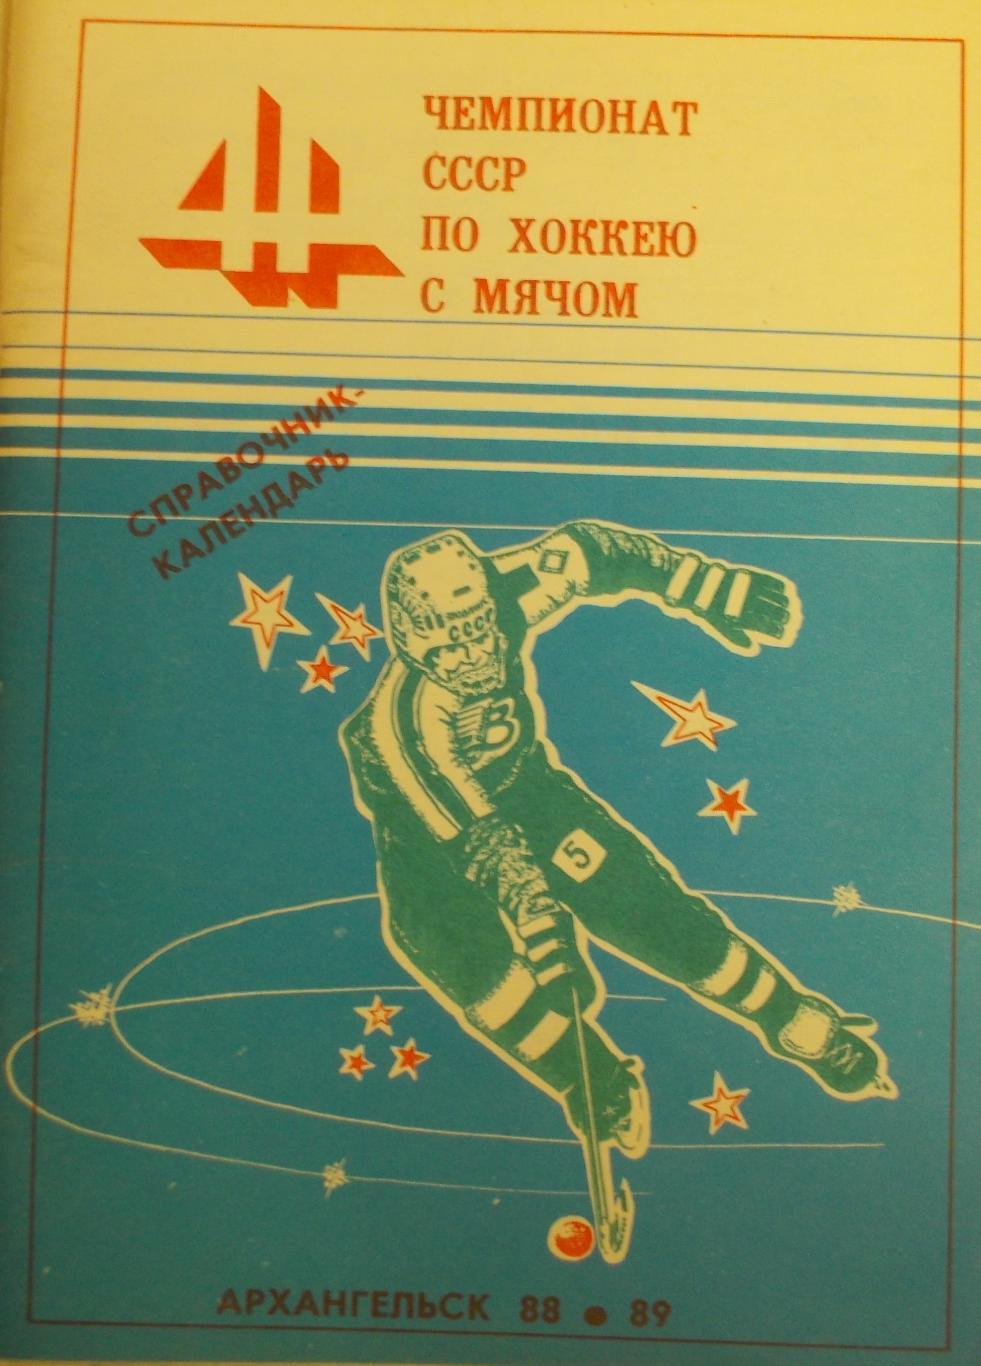 Хоккей с мячом. Архангельск 1988/89 (80 страниц)